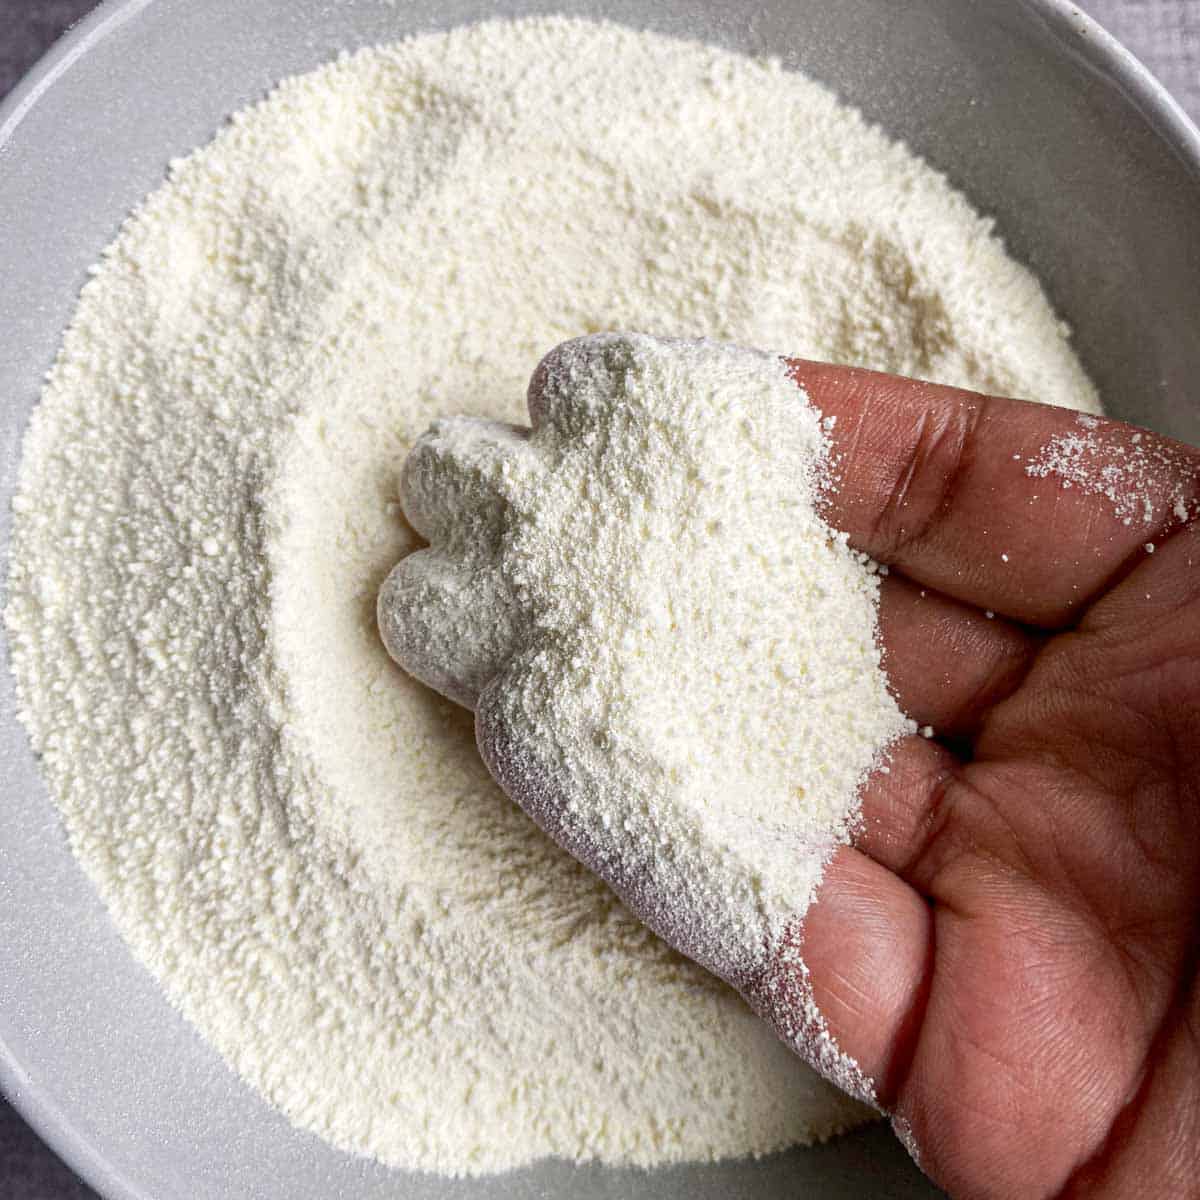 Hand holding milk powder